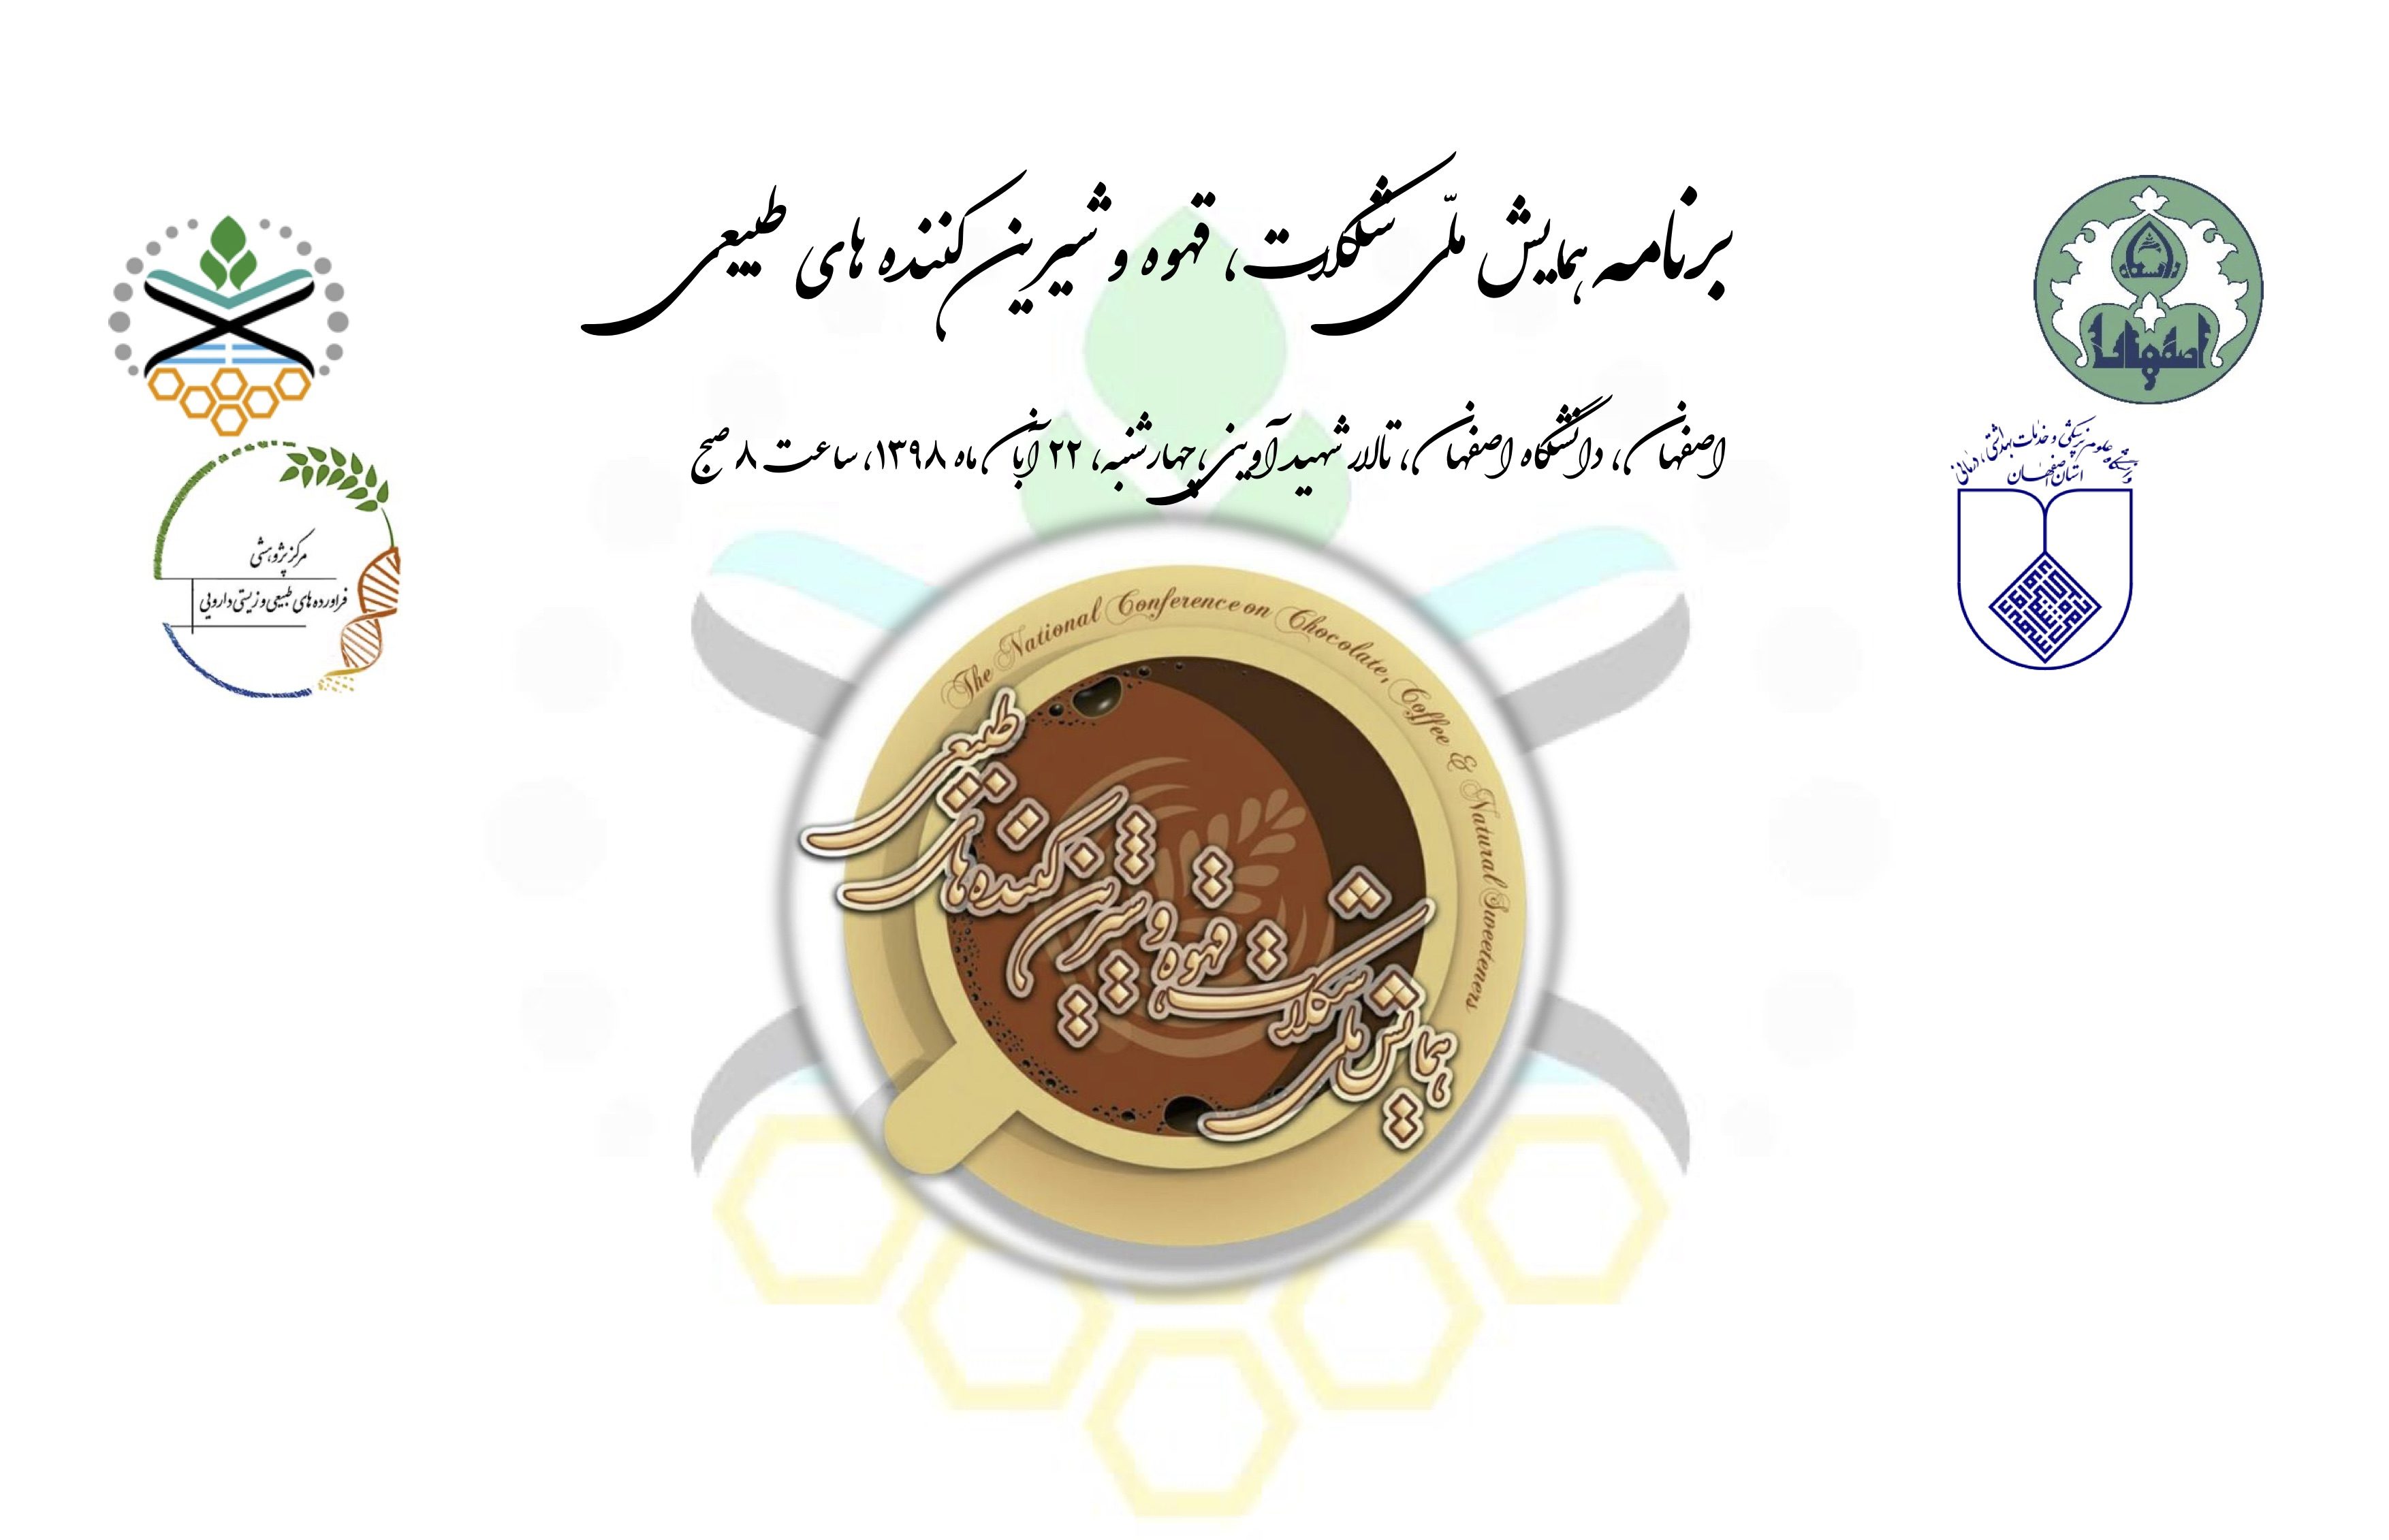 همایش قهوه اصفهان